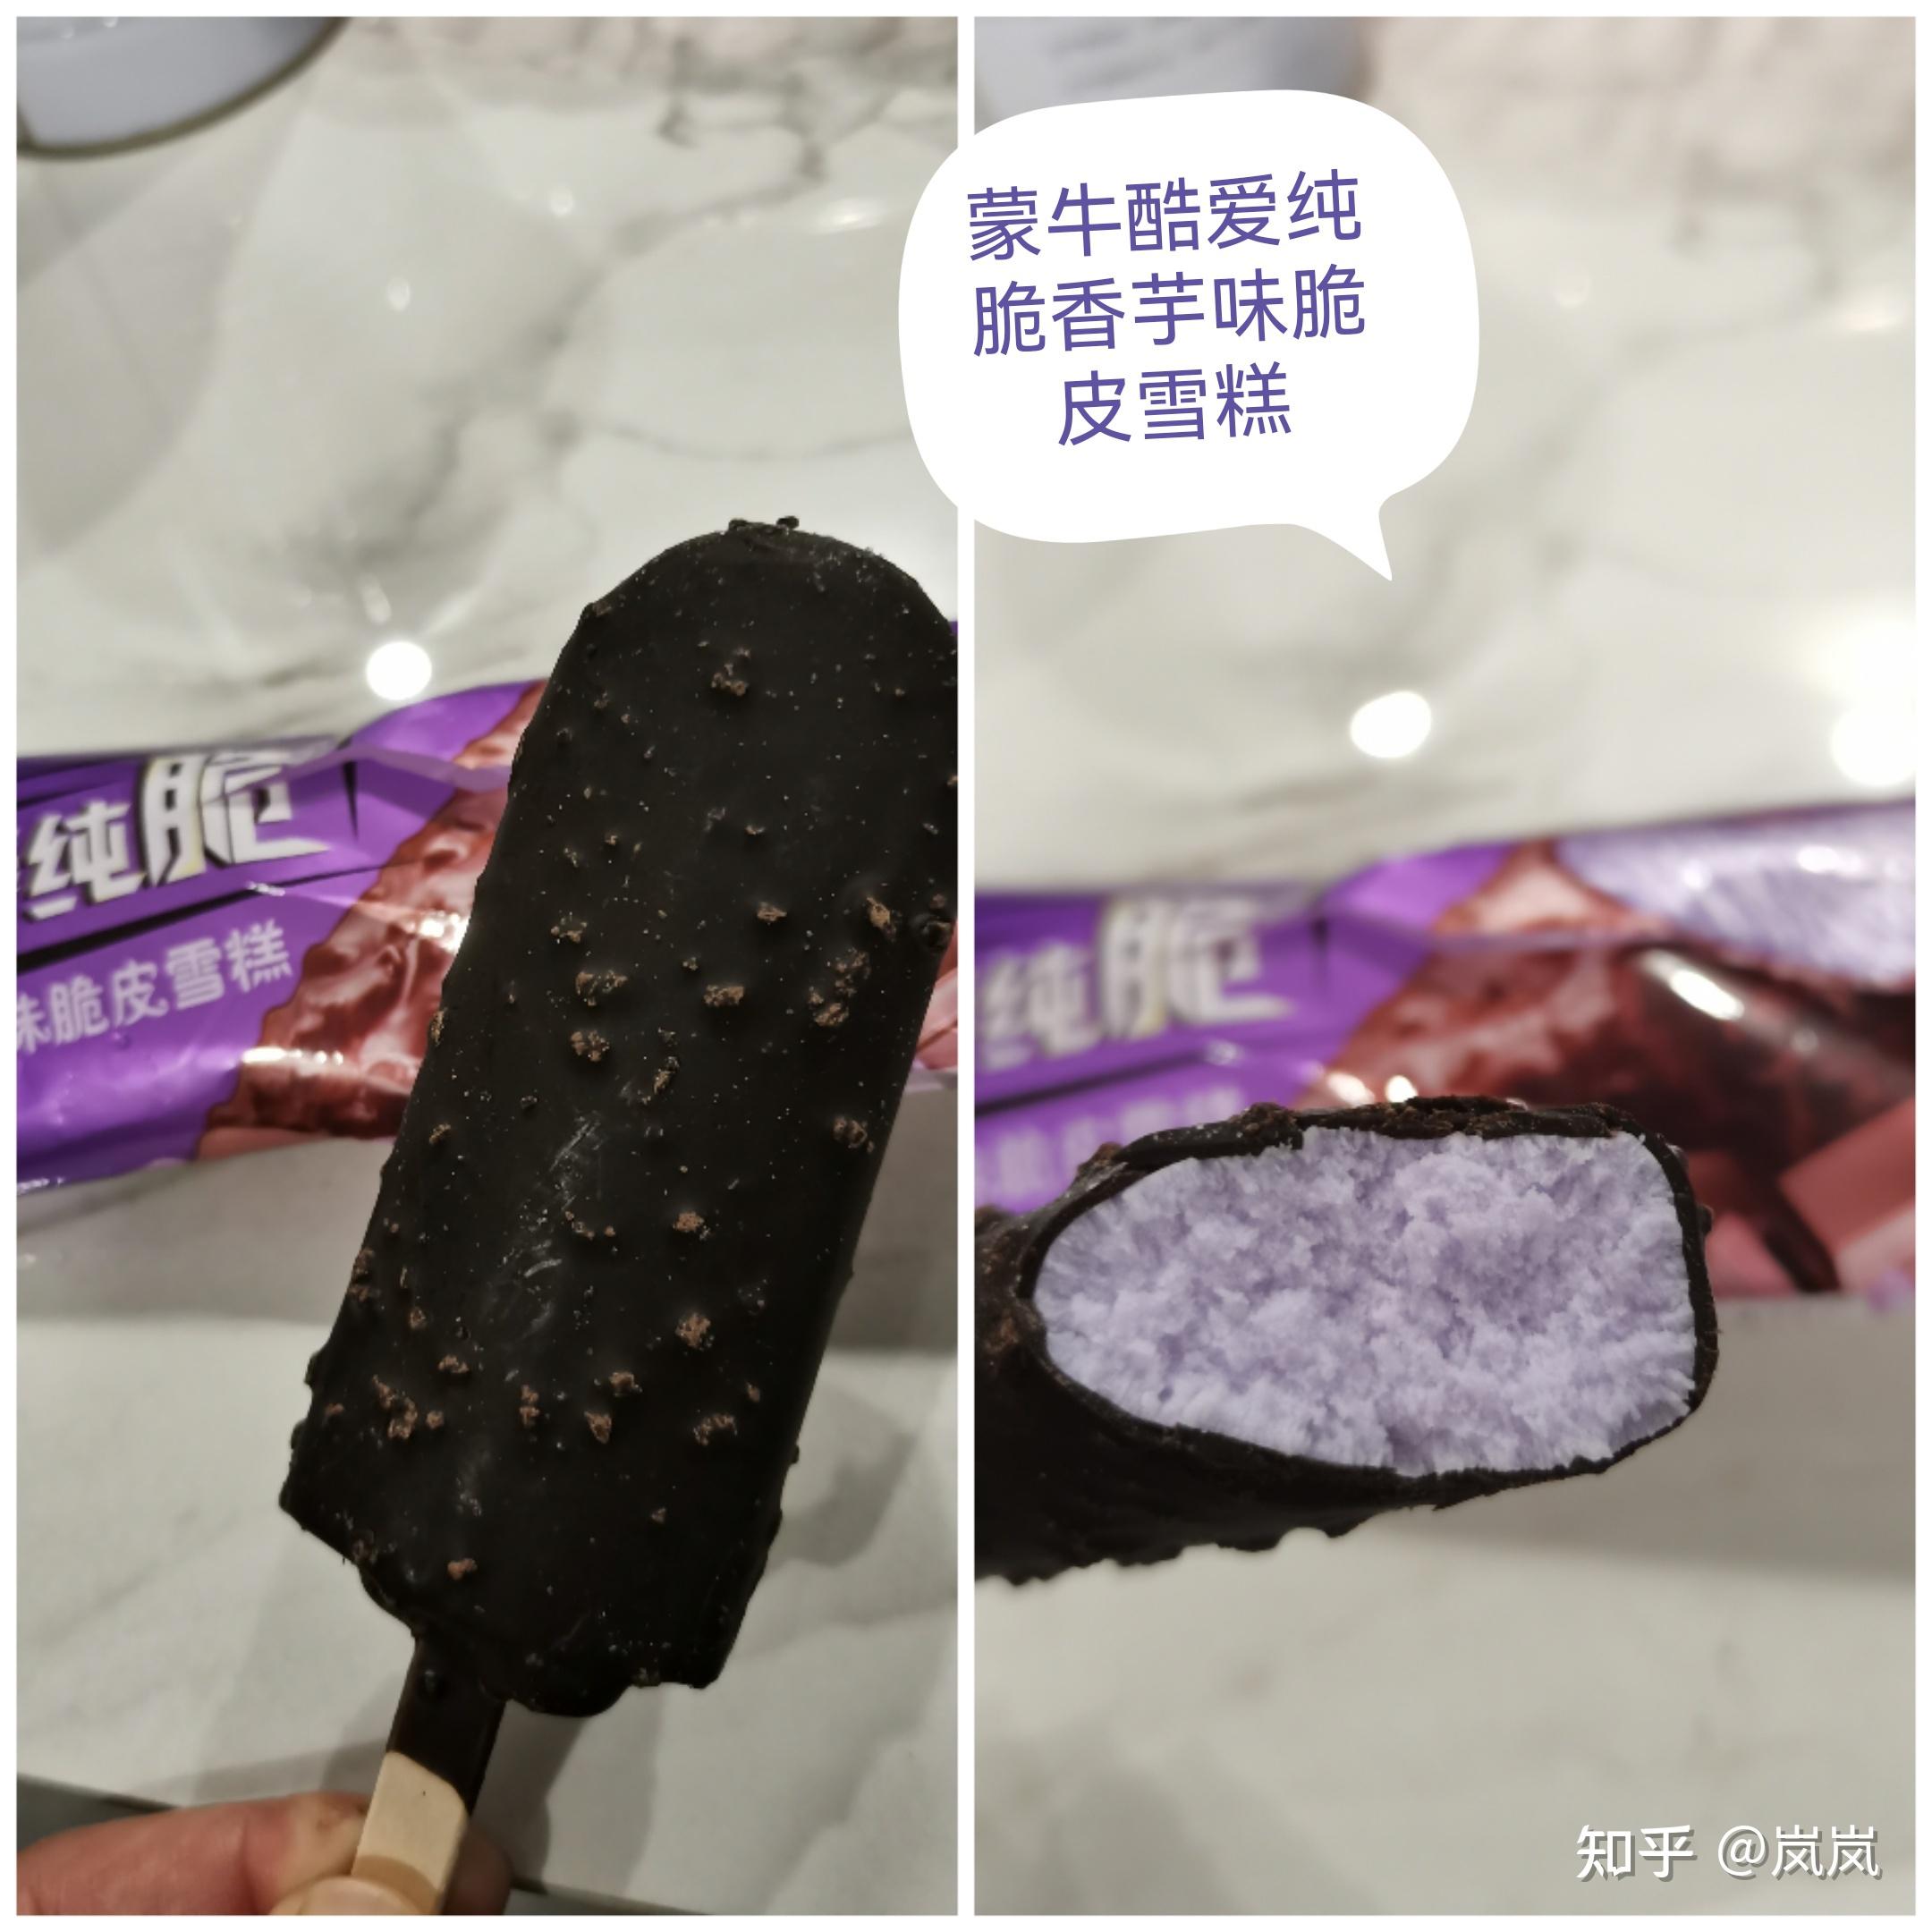 它外皮是属于像黑巧克力的样子,的里面就是香芋味的紫色冰淇淋,刚开始